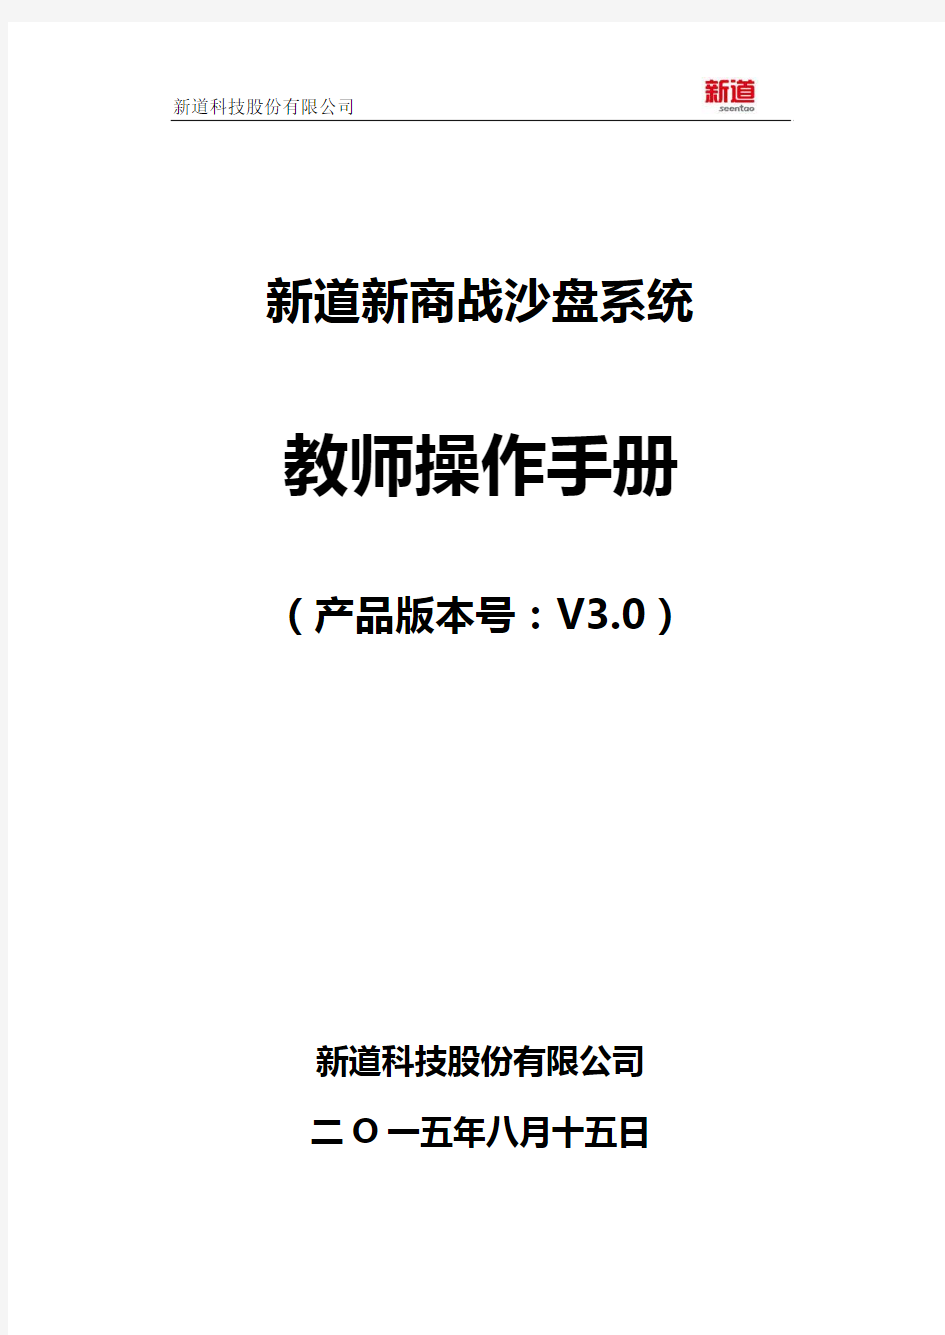 新道新商战沙盘系统V3.0操作手册-教师端